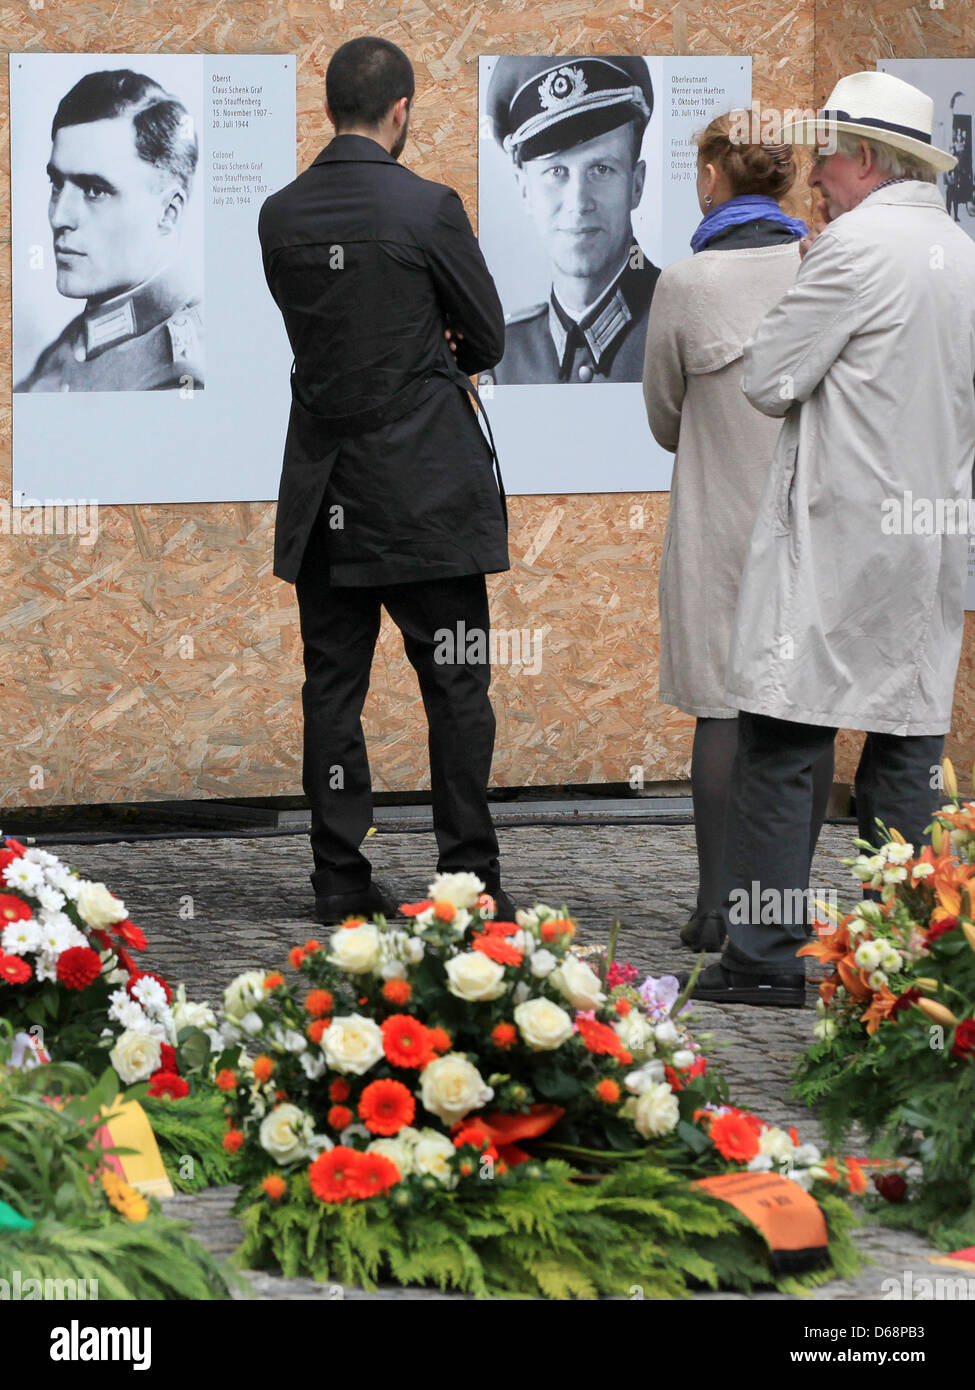 Los invitados mirar los retratos de los combatientes de la resistencia Claus Schenk Graf von Stauffenberg (L) y Oberleutnant Werner von Haeften durante un acto conmemorativo para conmemorar el 68º aniversario del intento de asesinato de 1944, Adolf Hitler, en el Bendlerblock de Berlín, Alemania, el 20 de julio de 2012. El Bendlerblock sirvió como sede de la Wehrmacht oficiales que llevaron a cabo la Foto de stock